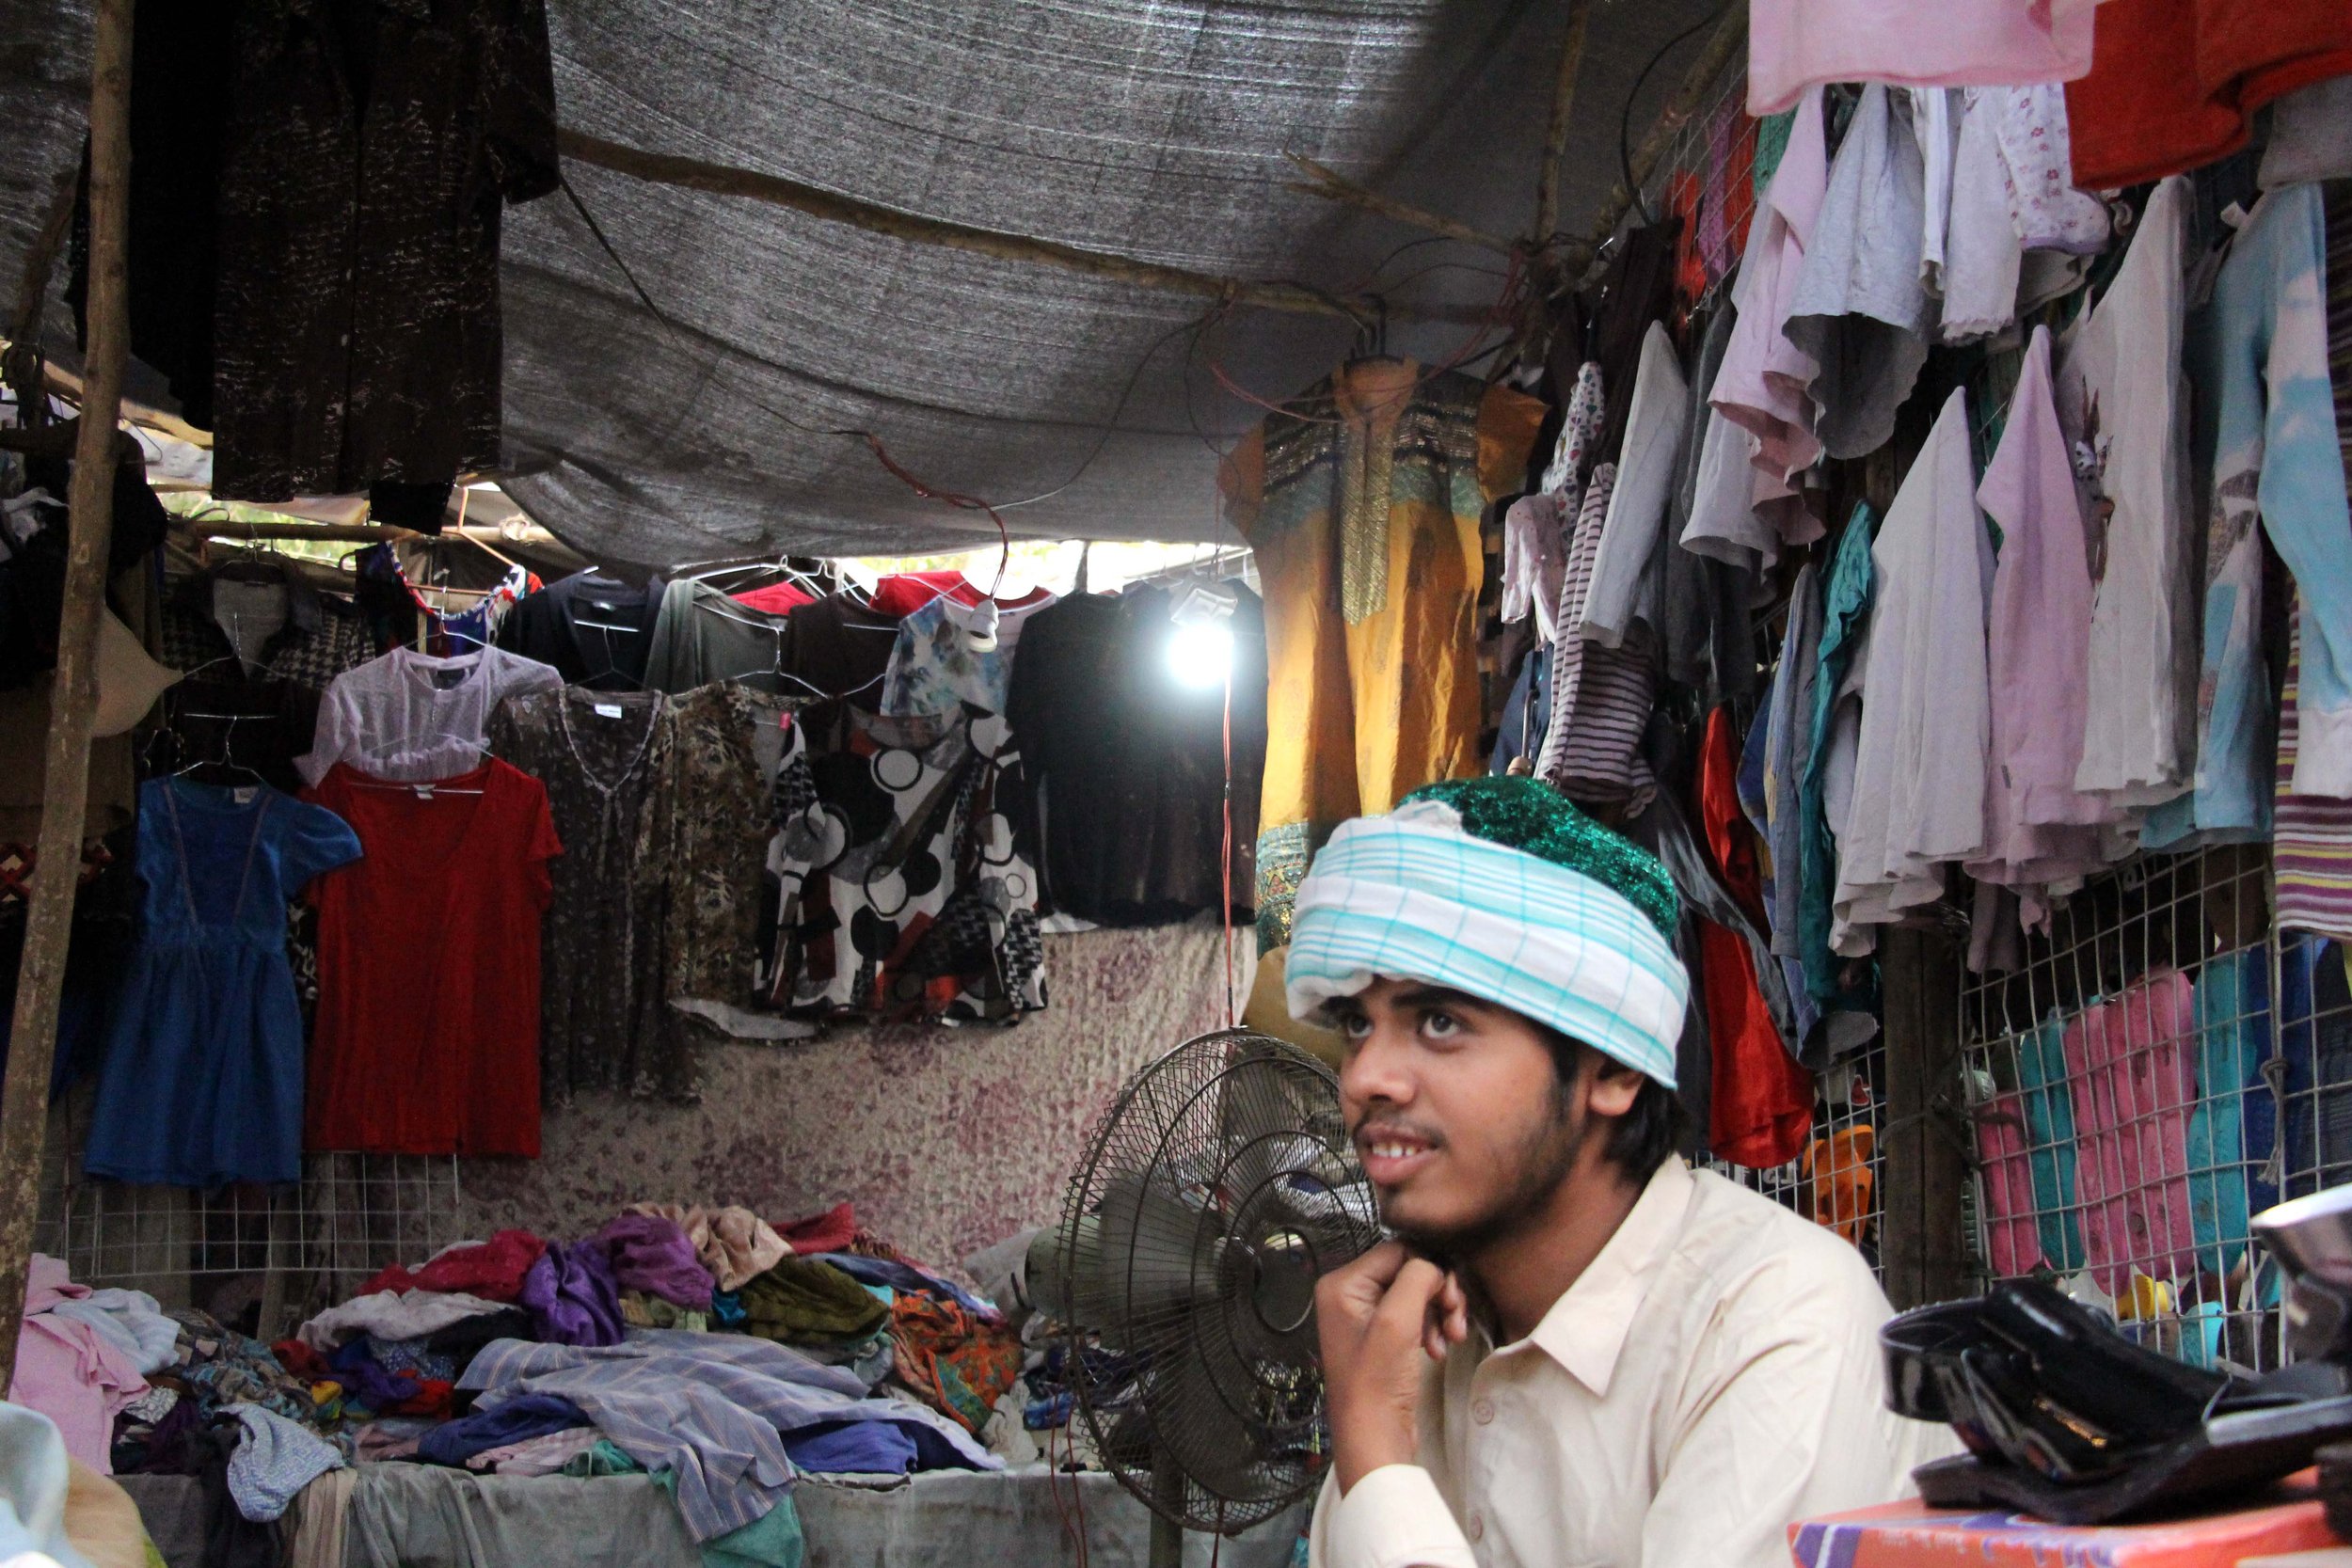  Cene oblačil so v Larkani občutno nižje kot v Karačiju, a je blago tudi slabše kakovosti. Foto: Adil Jawad 